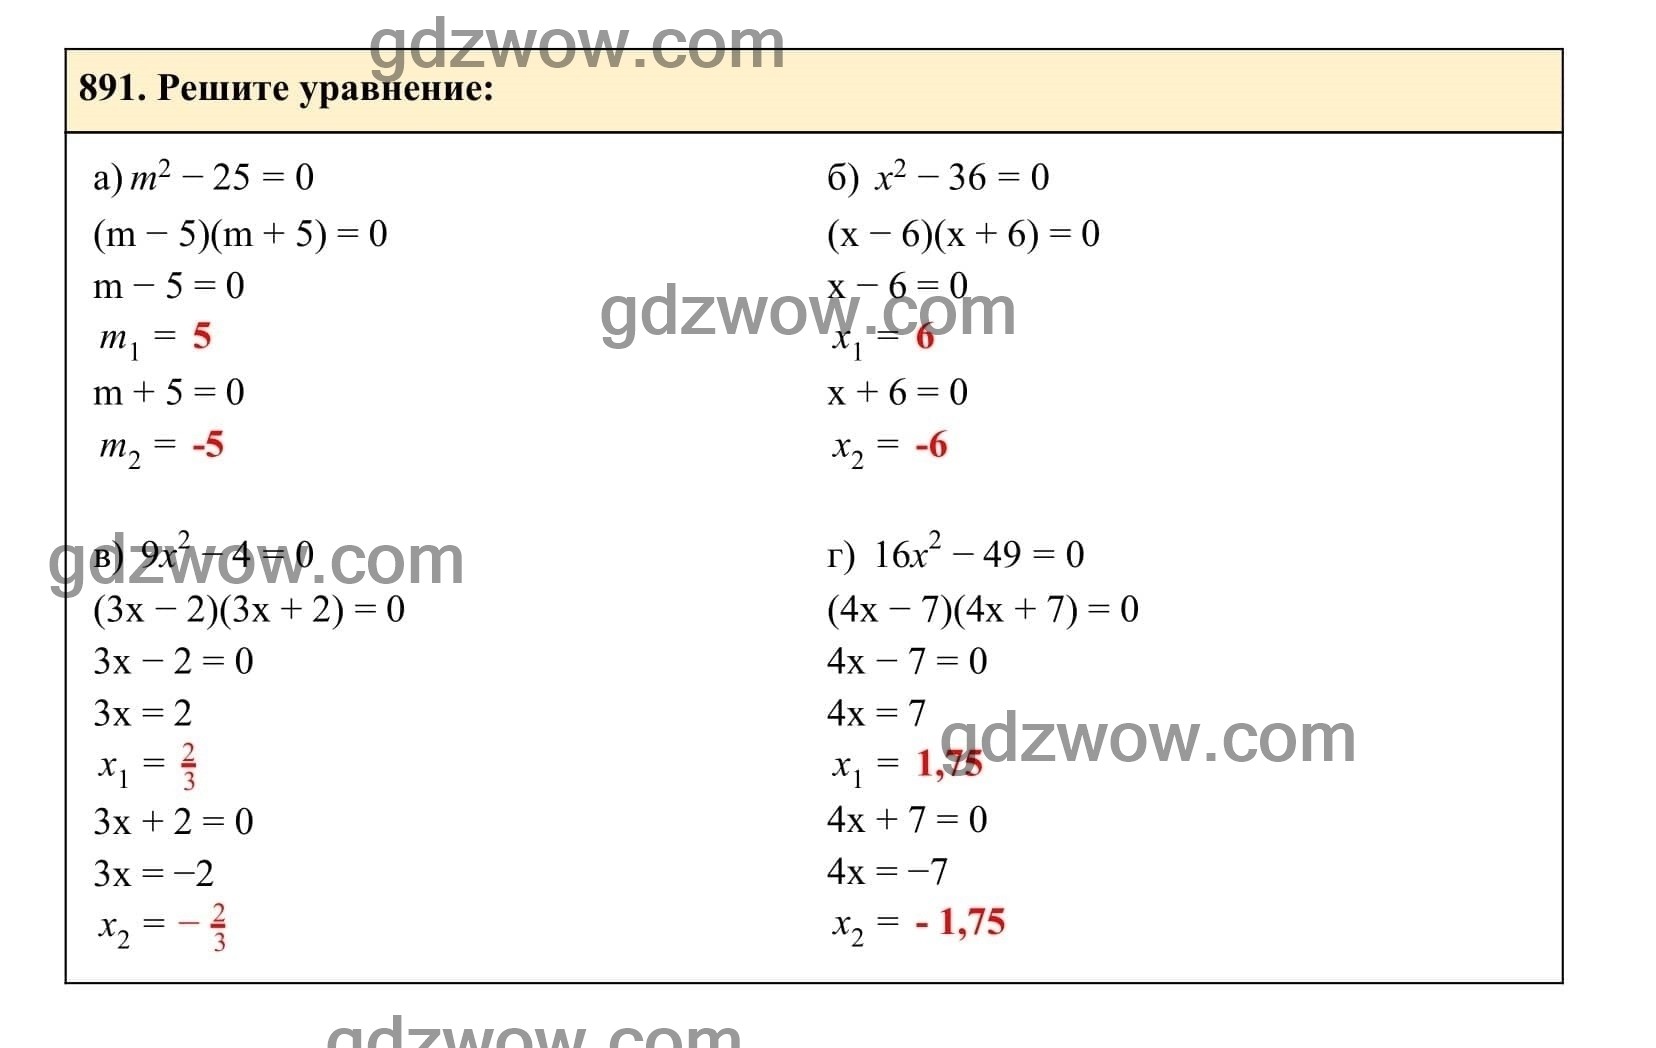 Упражнение 891 - ГДЗ по Алгебре 7 класс Учебник Макарычев (решебник) - GDZwow